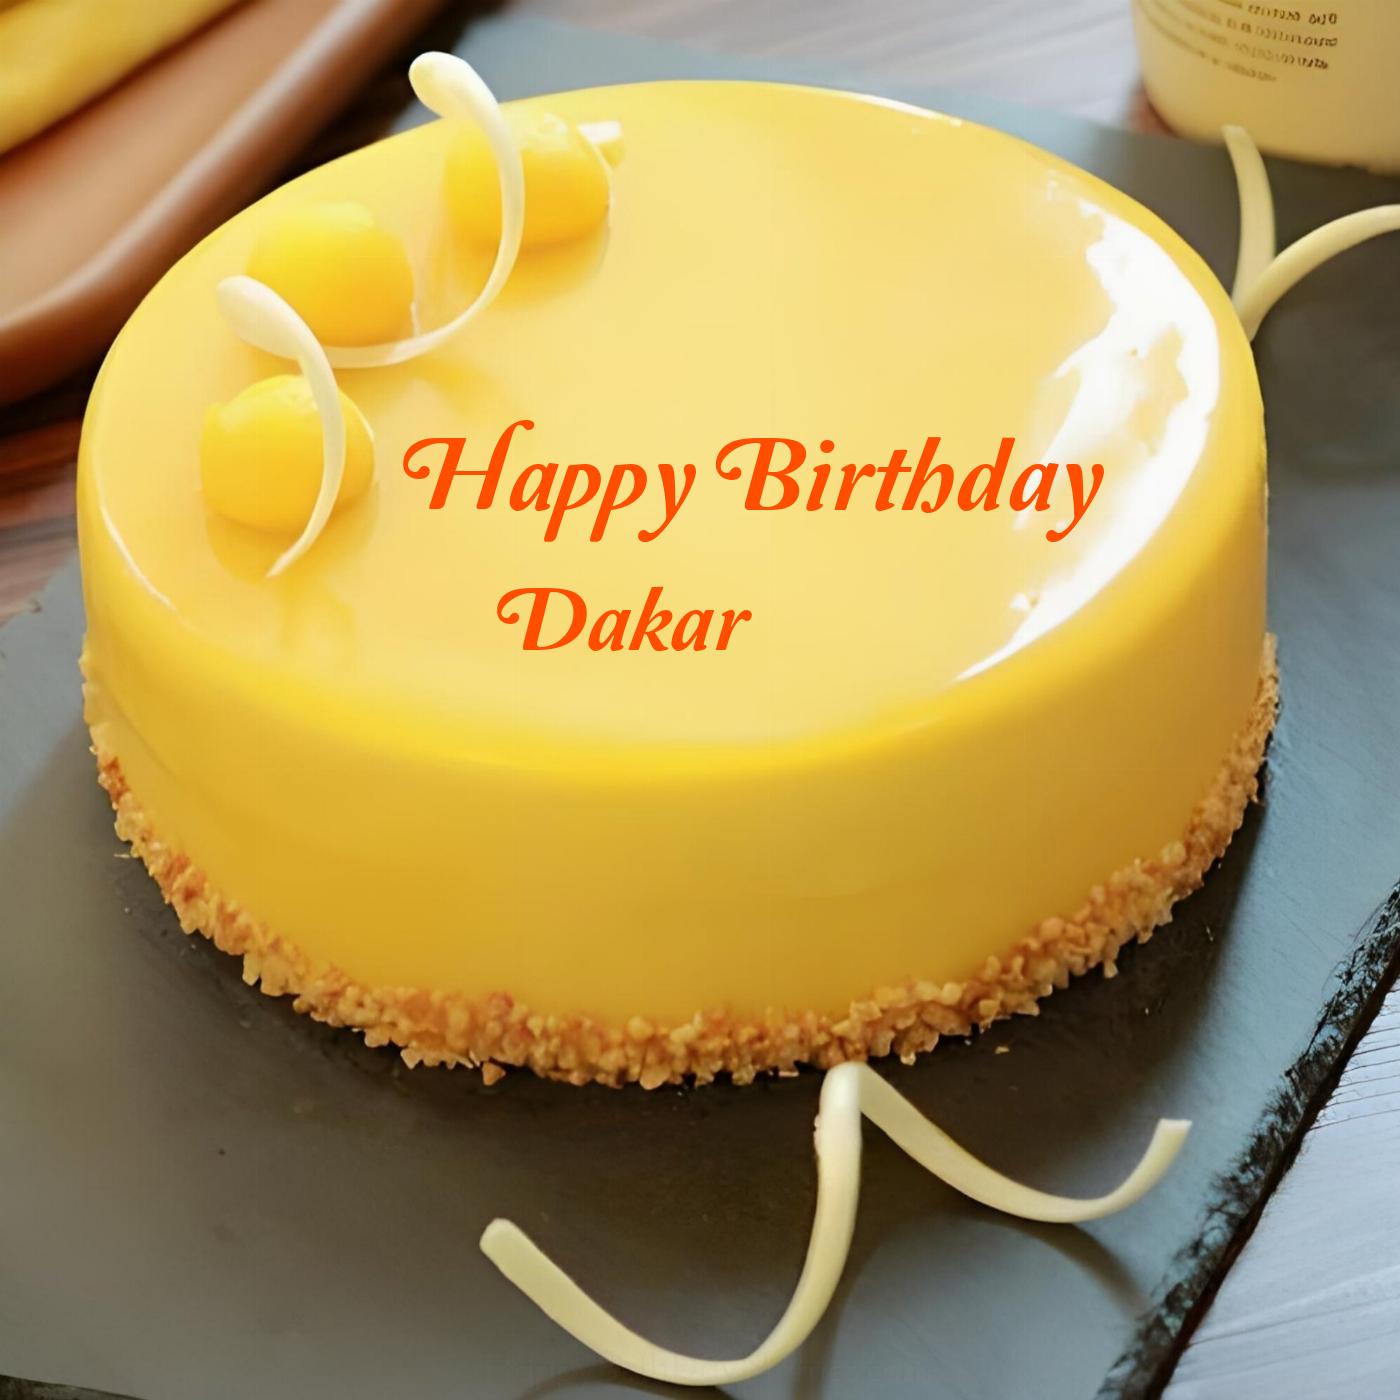 Happy Birthday Dakar Beautiful Yellow Cake